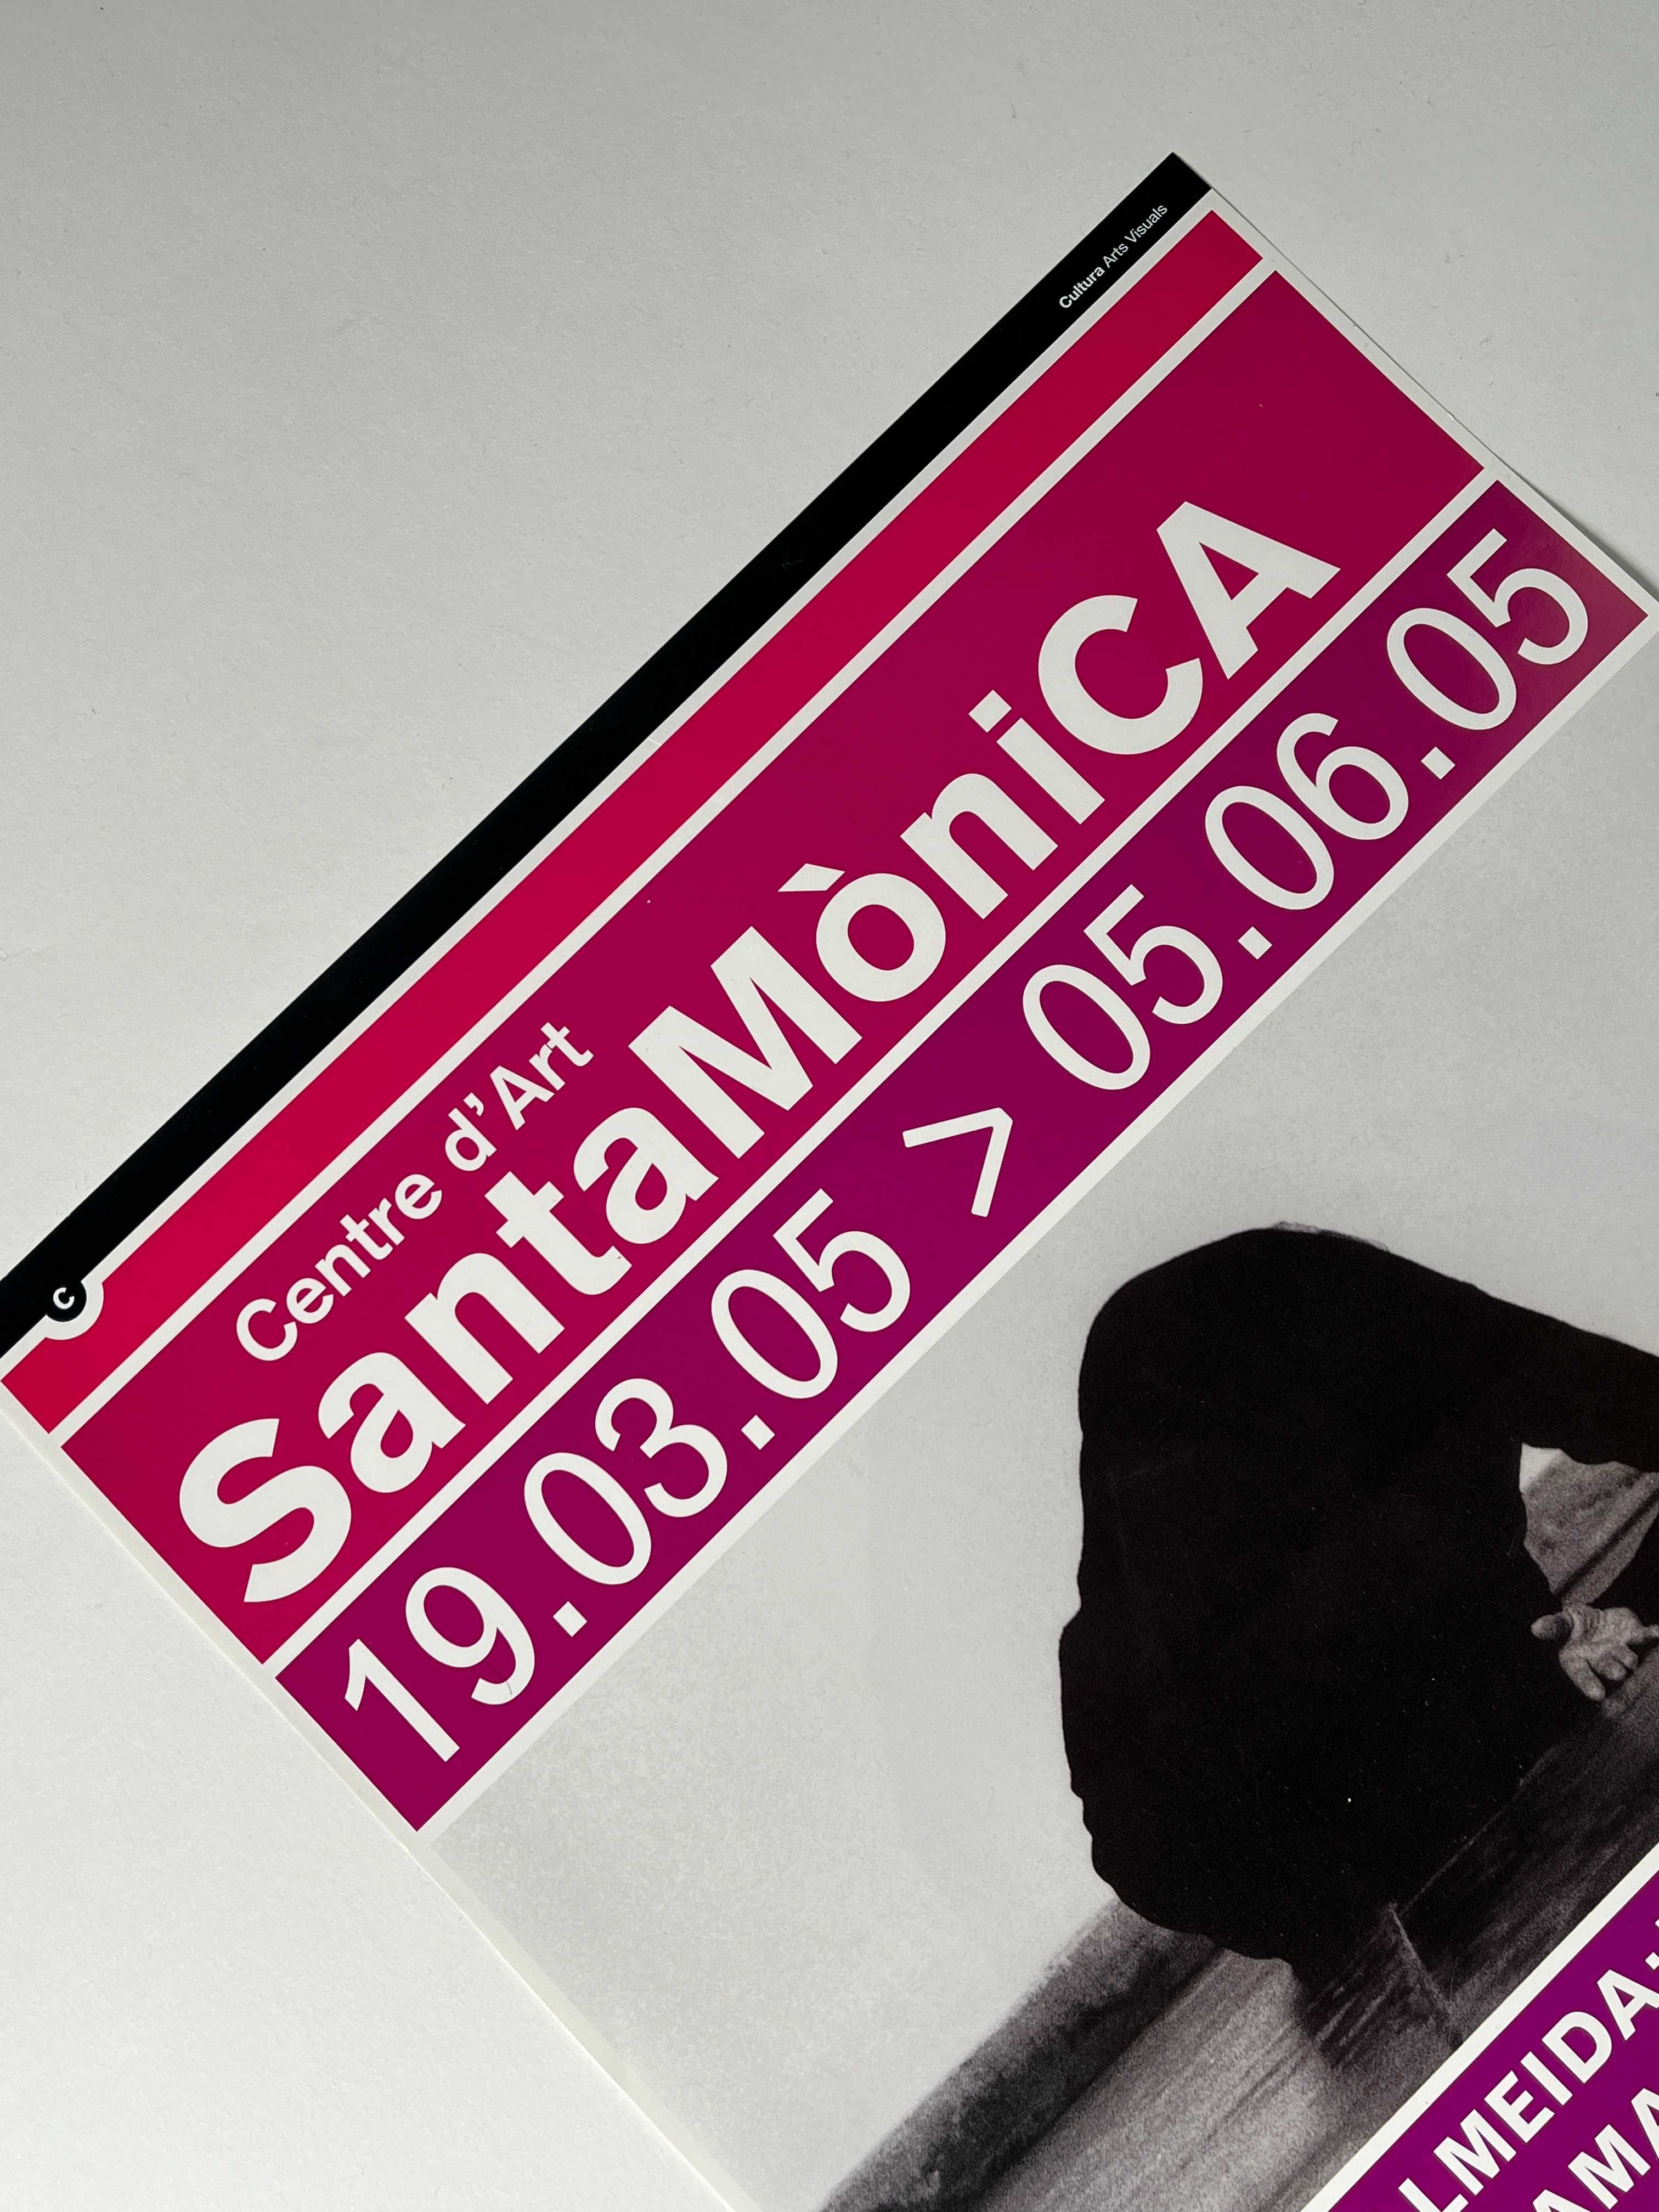 Helena Almeida 2005 Santa Monica Barcelona Cartaz de exposição